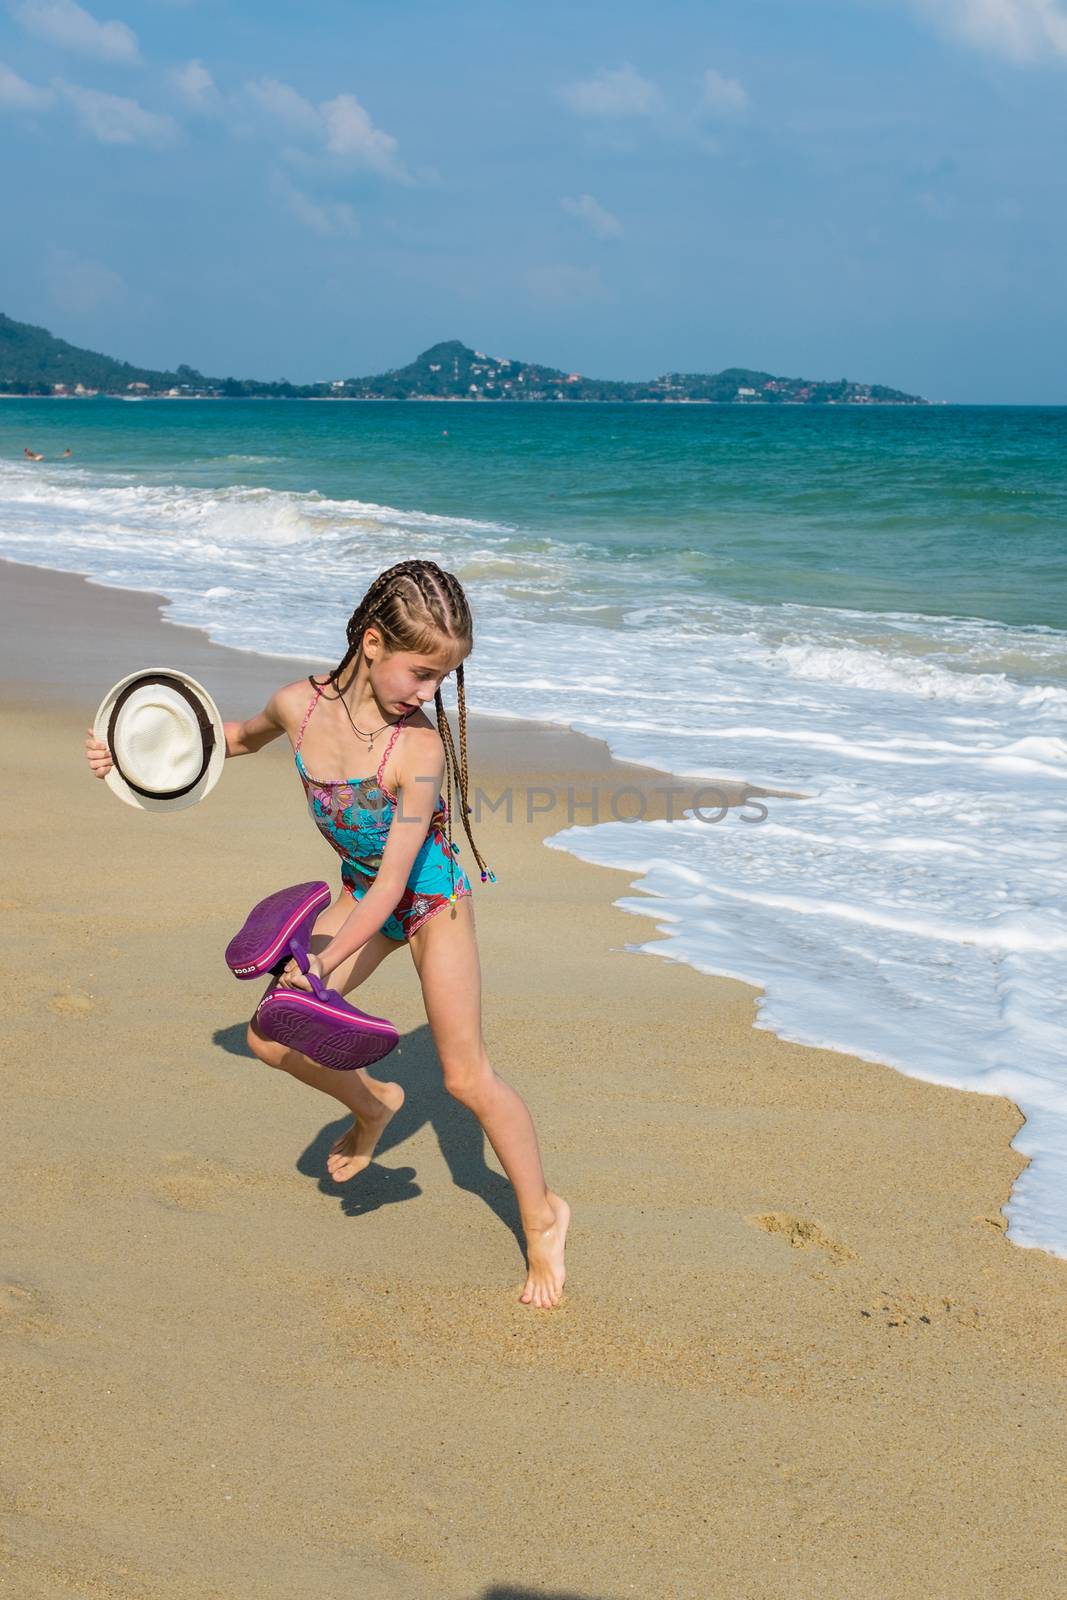 little girl on the sunny sea beach